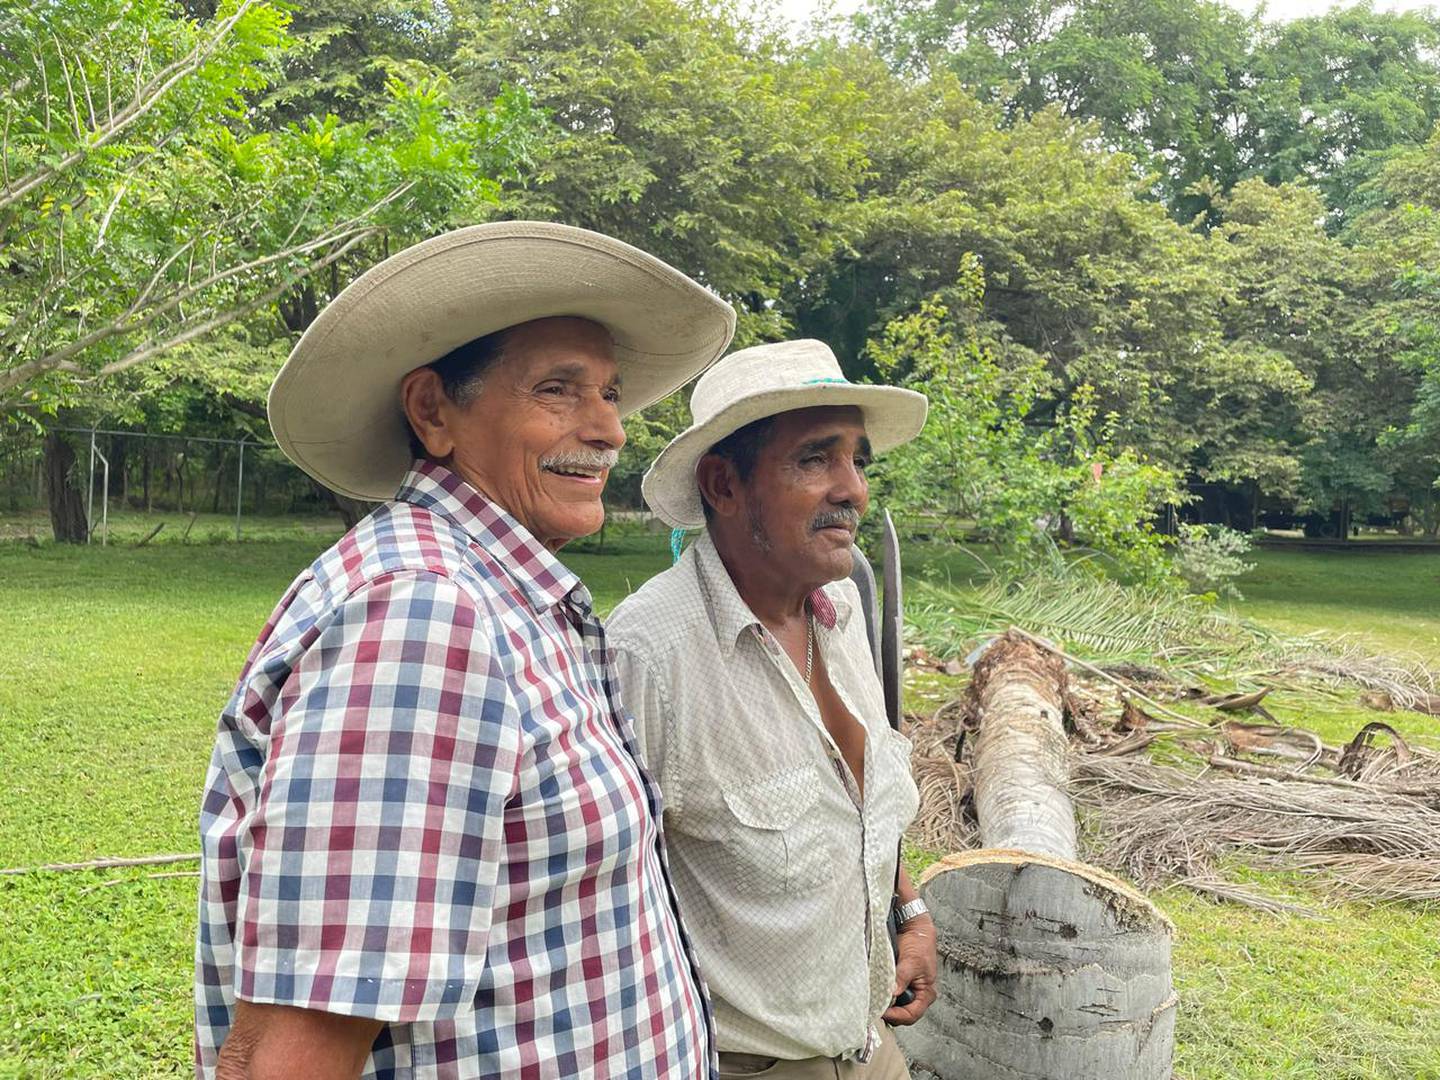 Don Francisco Alvarado, mejor conocido como “Chico de la Loma” y don José Luis Villarreal, mejor conocido como “Güicho Pizarro”, son dos experimentados coyoleros guanacatecos